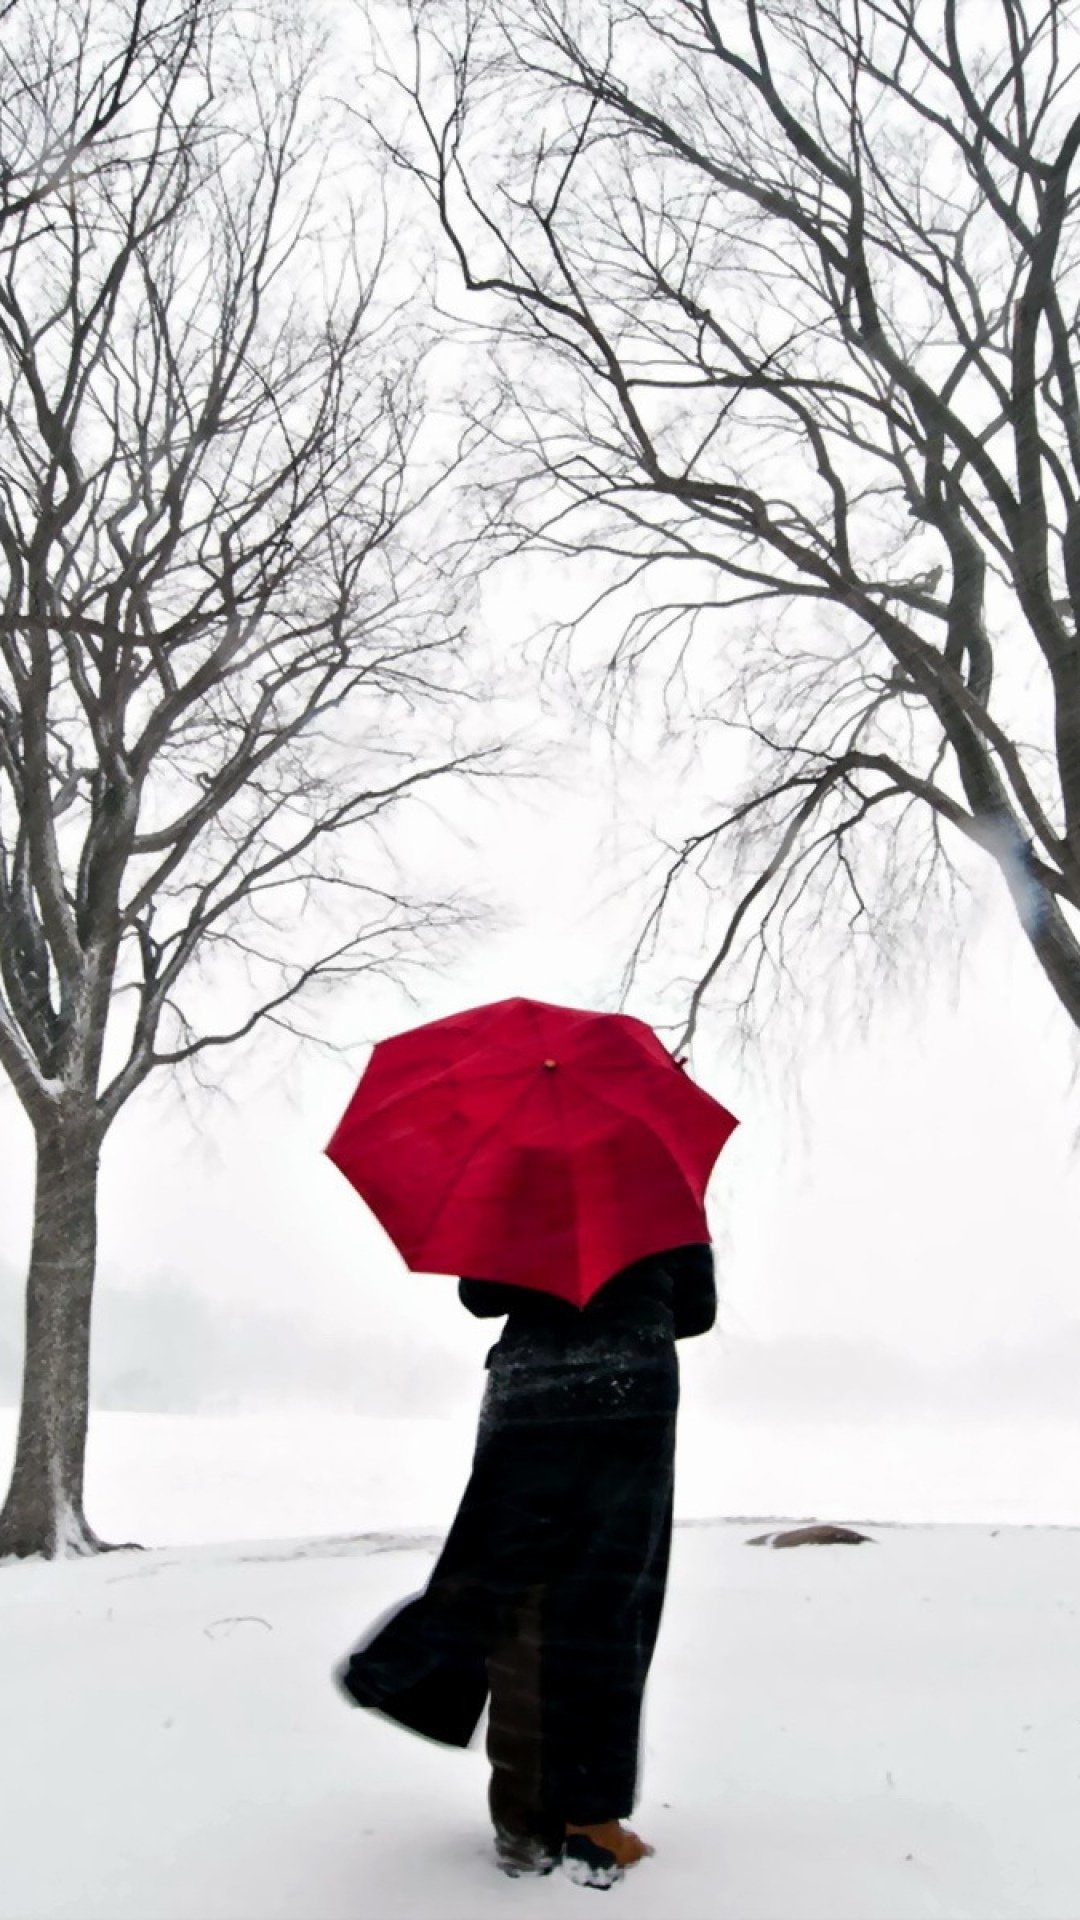 大雪纷飞的冬天撑起红伞